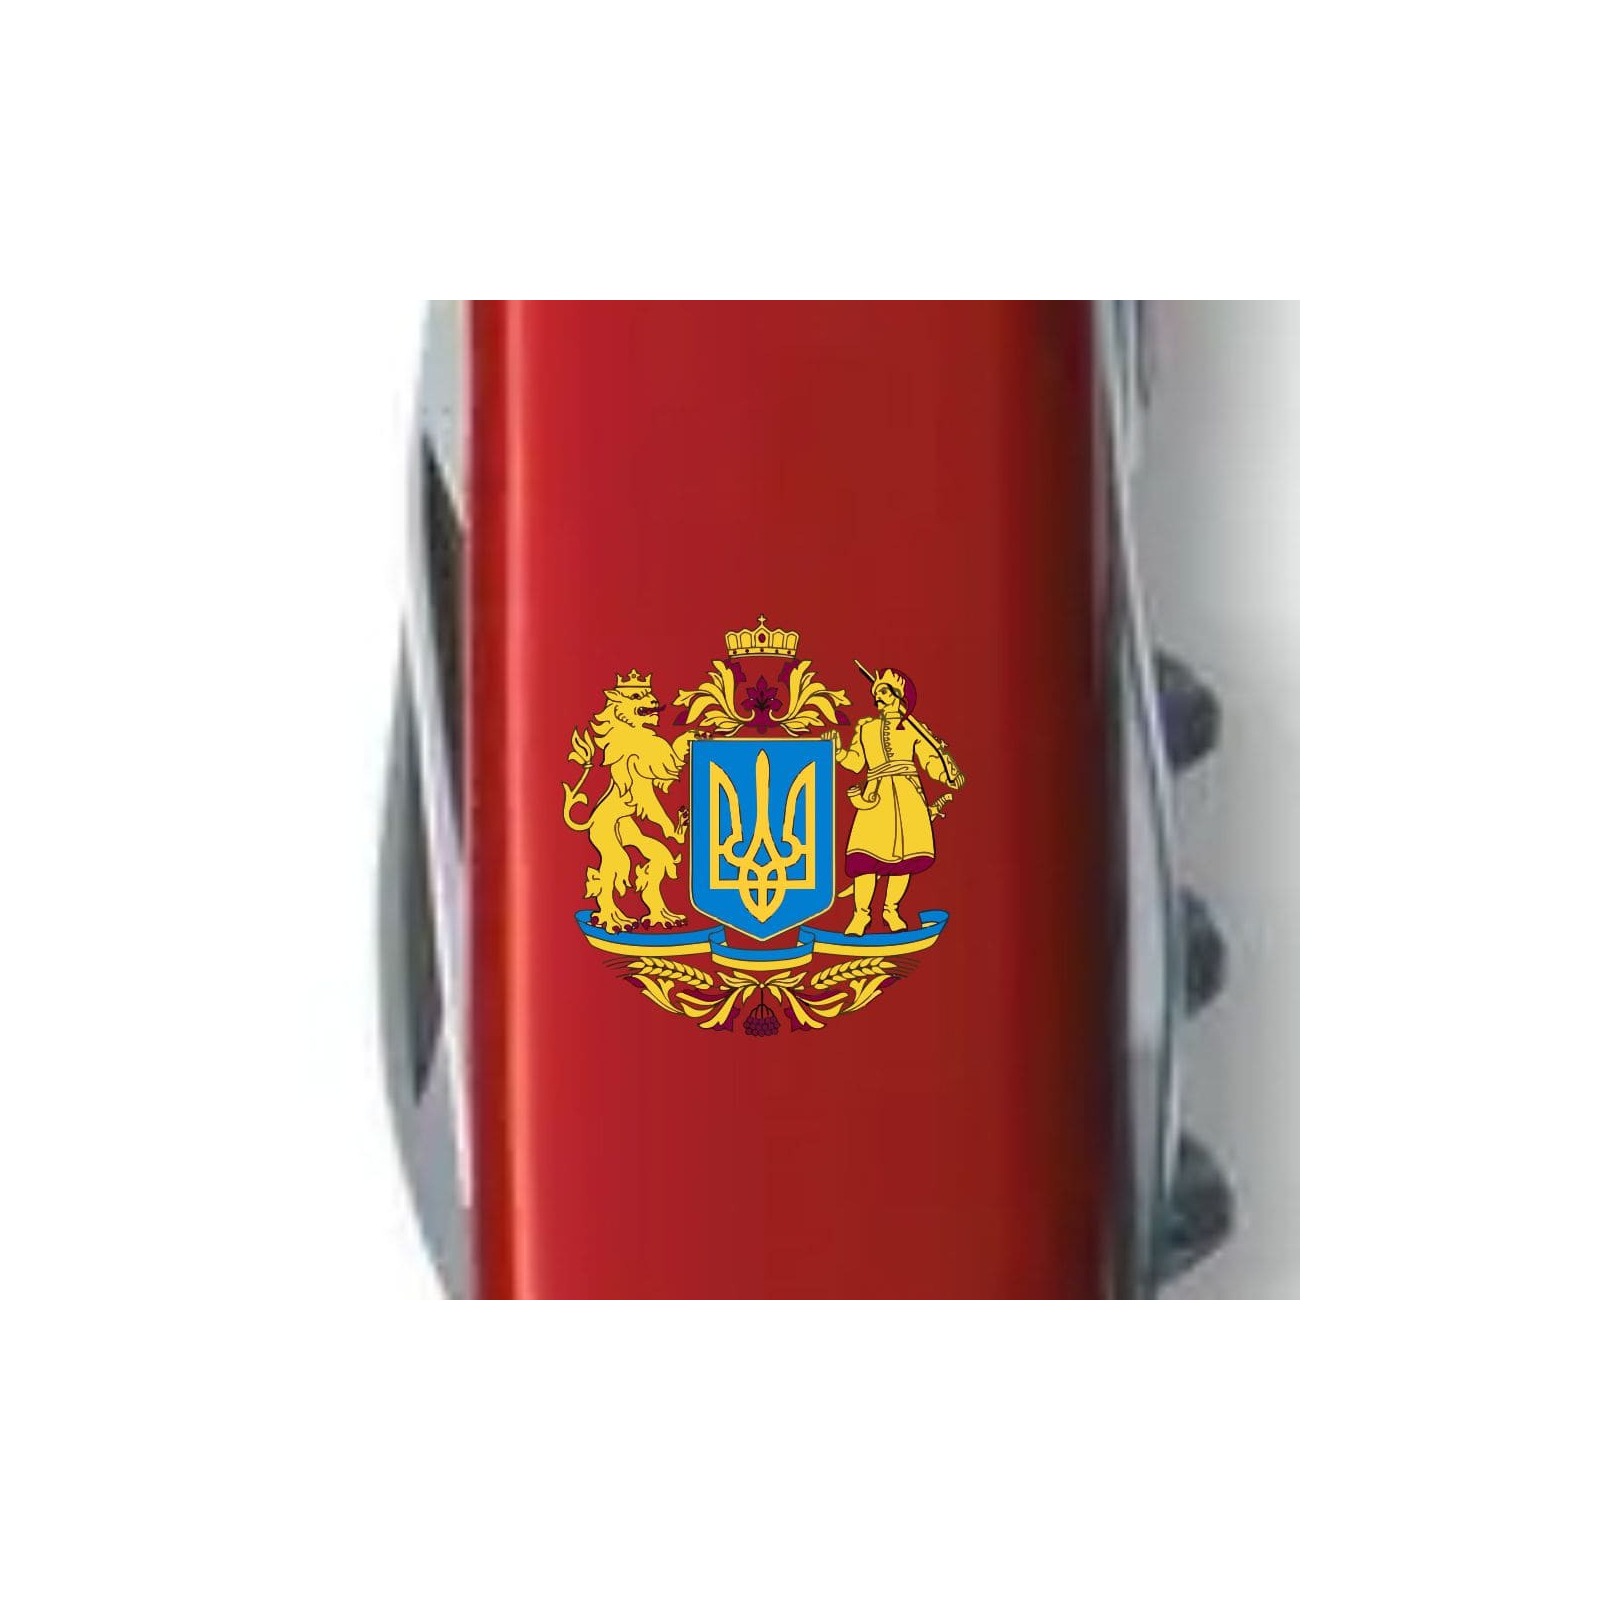 Нож Victorinox Spartan Ukraine Red "Ukraine" (1.3603_T0140u) изображение 4